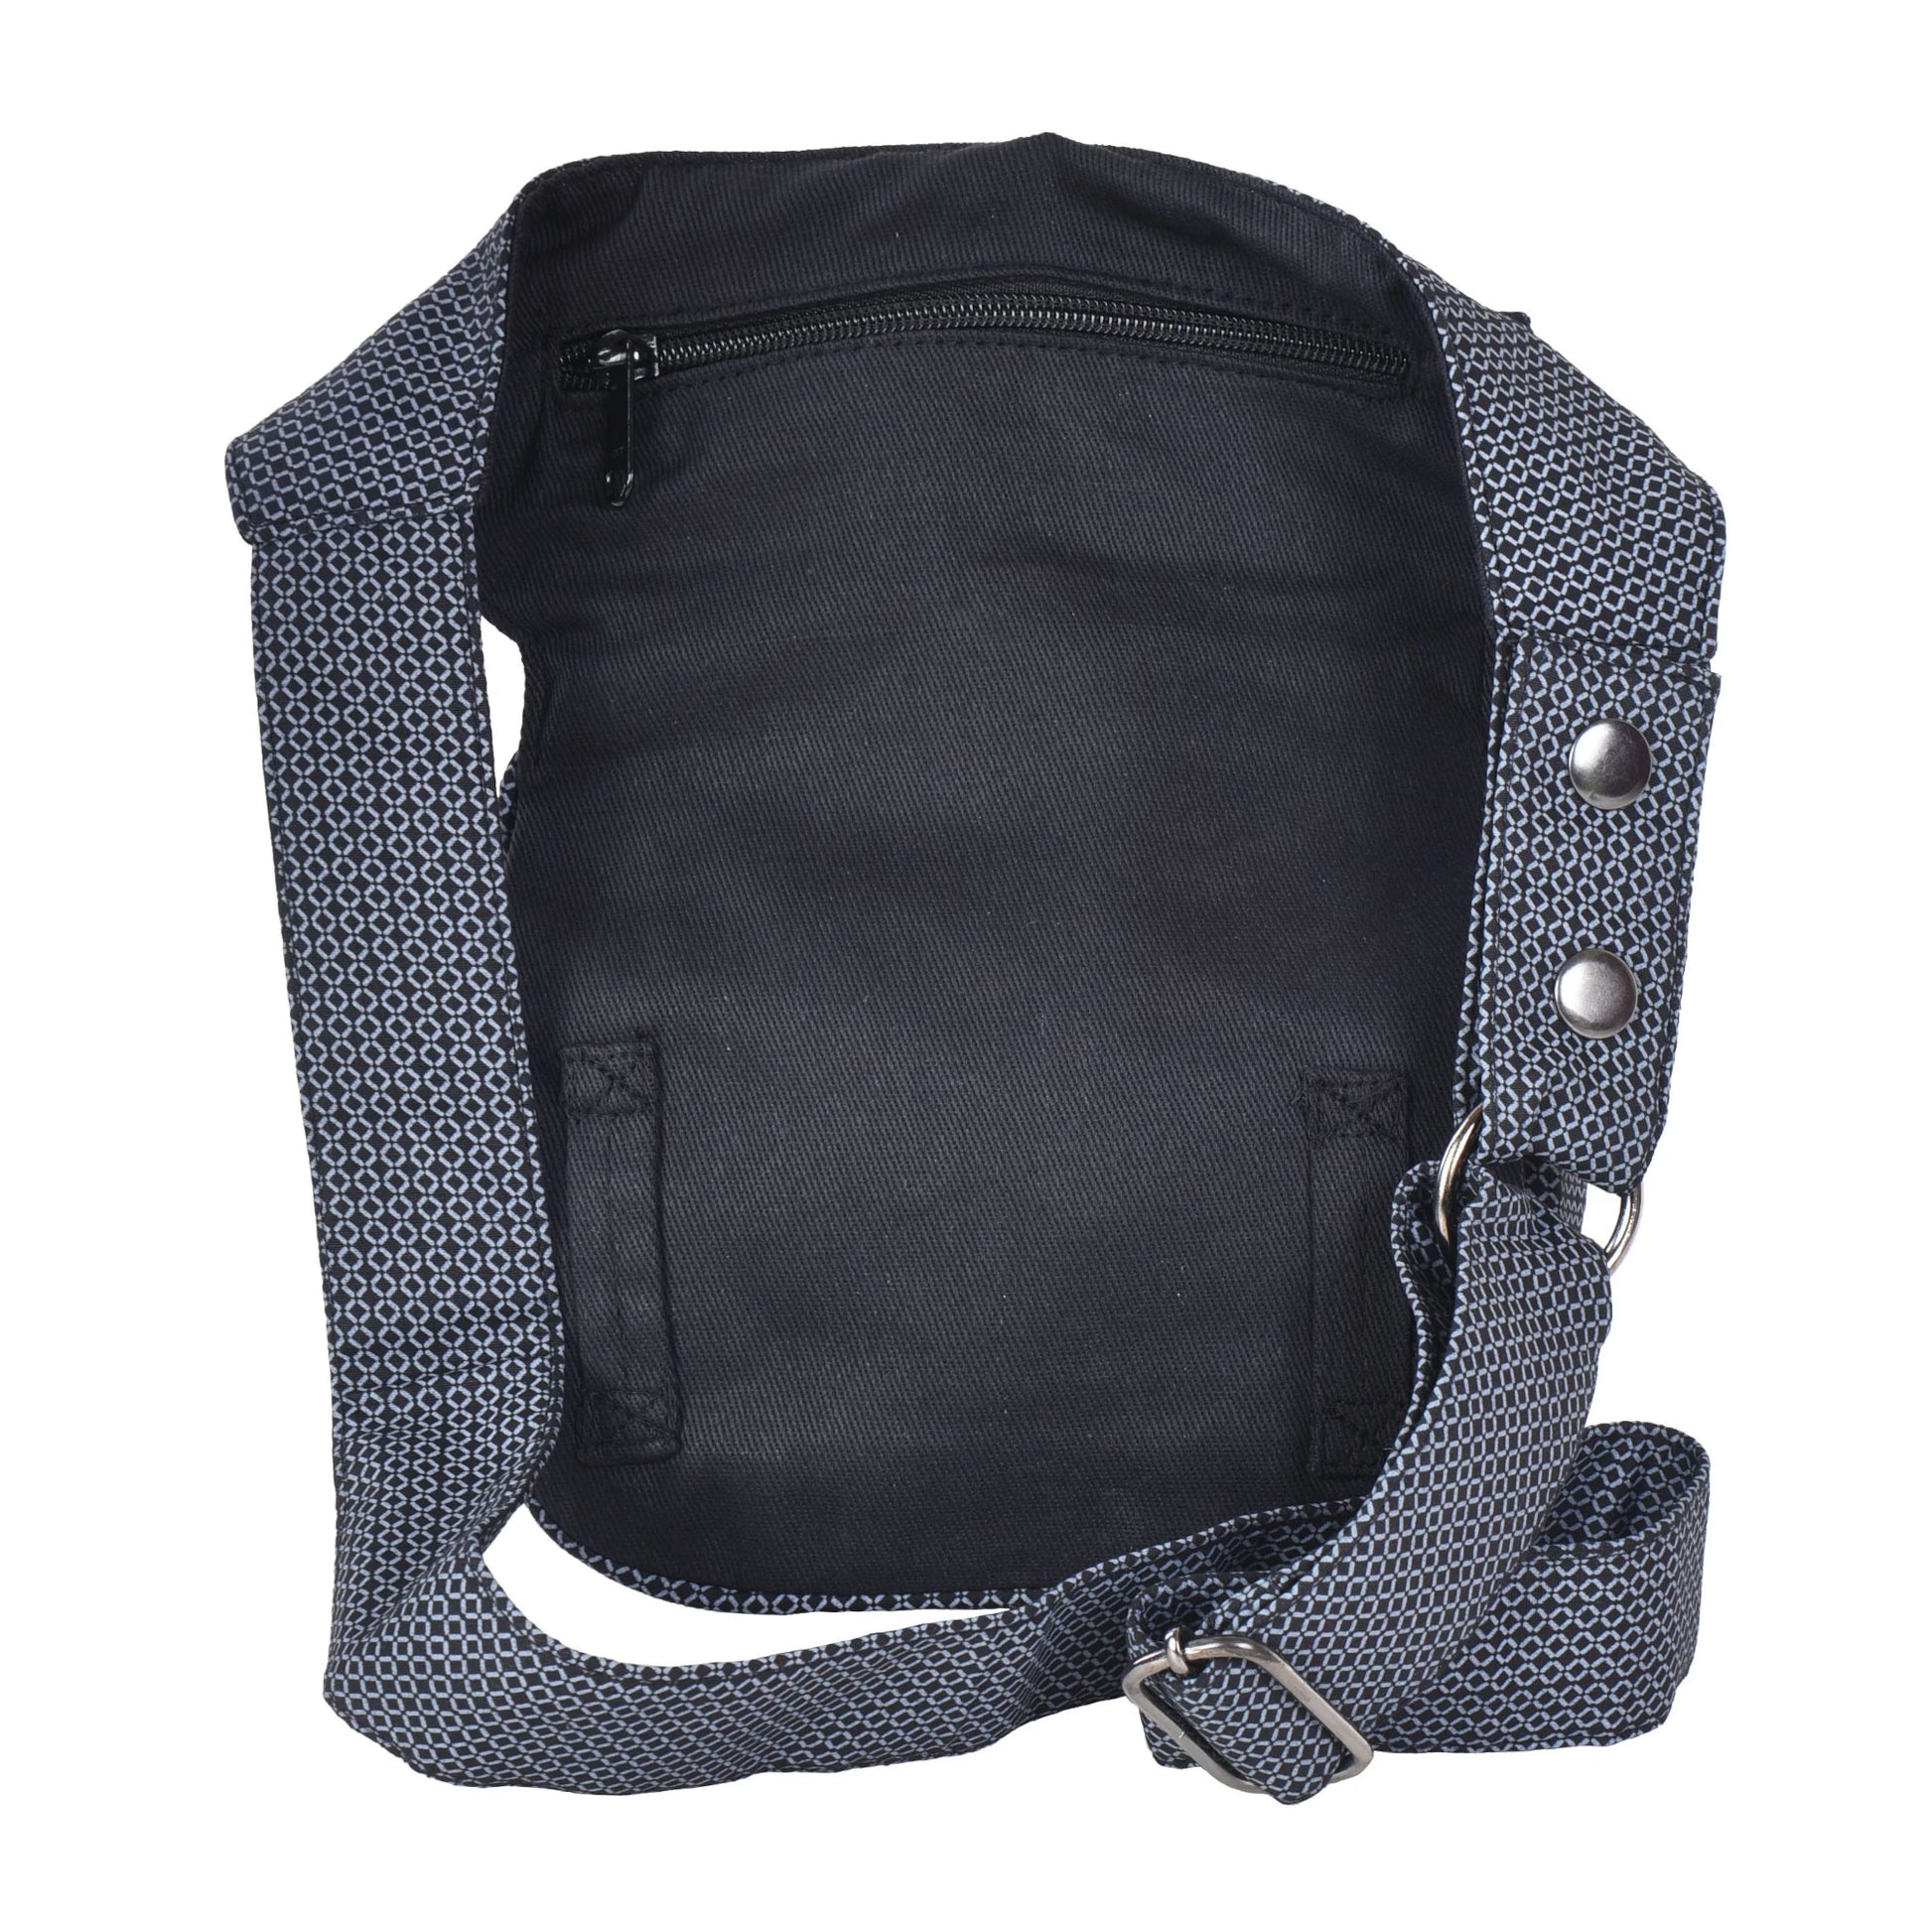 Gürteltasche Schwarz, mit grauem Paisley. Diese Tasche verfügt über ein hinteres Reißverschlussfach und zwei Gürtelschlaufen zur Befestigung eines Beingurtes.